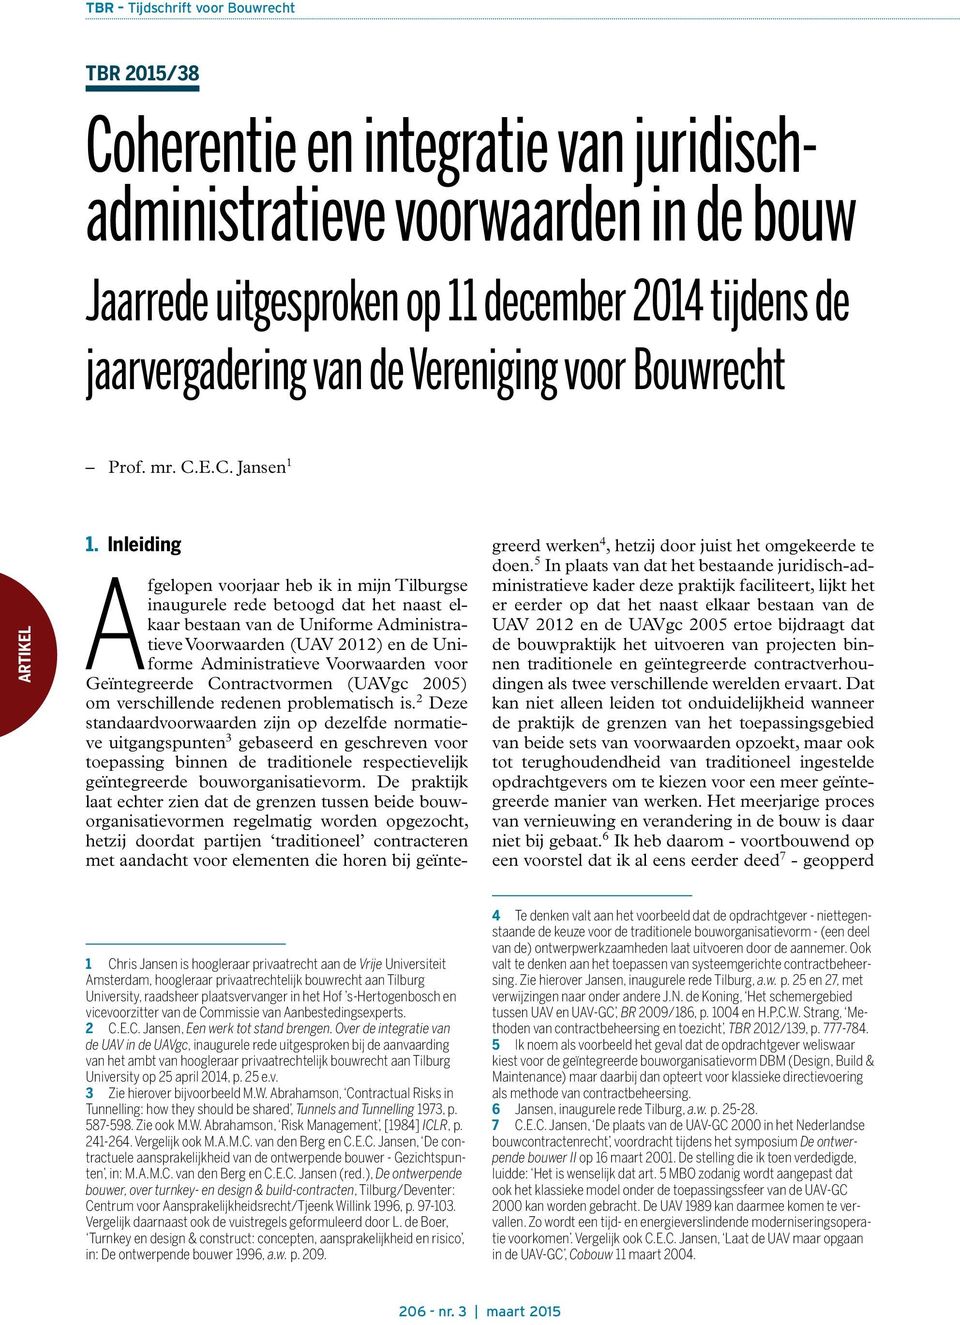 Inleiding1 Afgelopen voorjaar heb ik in mijn Tilburgse inaugurele rede betoogd dat het naast elkaar bestaan van de Uniforme Administratieve Voorwaarden (UAV 2012) en de Uniforme Administratieve